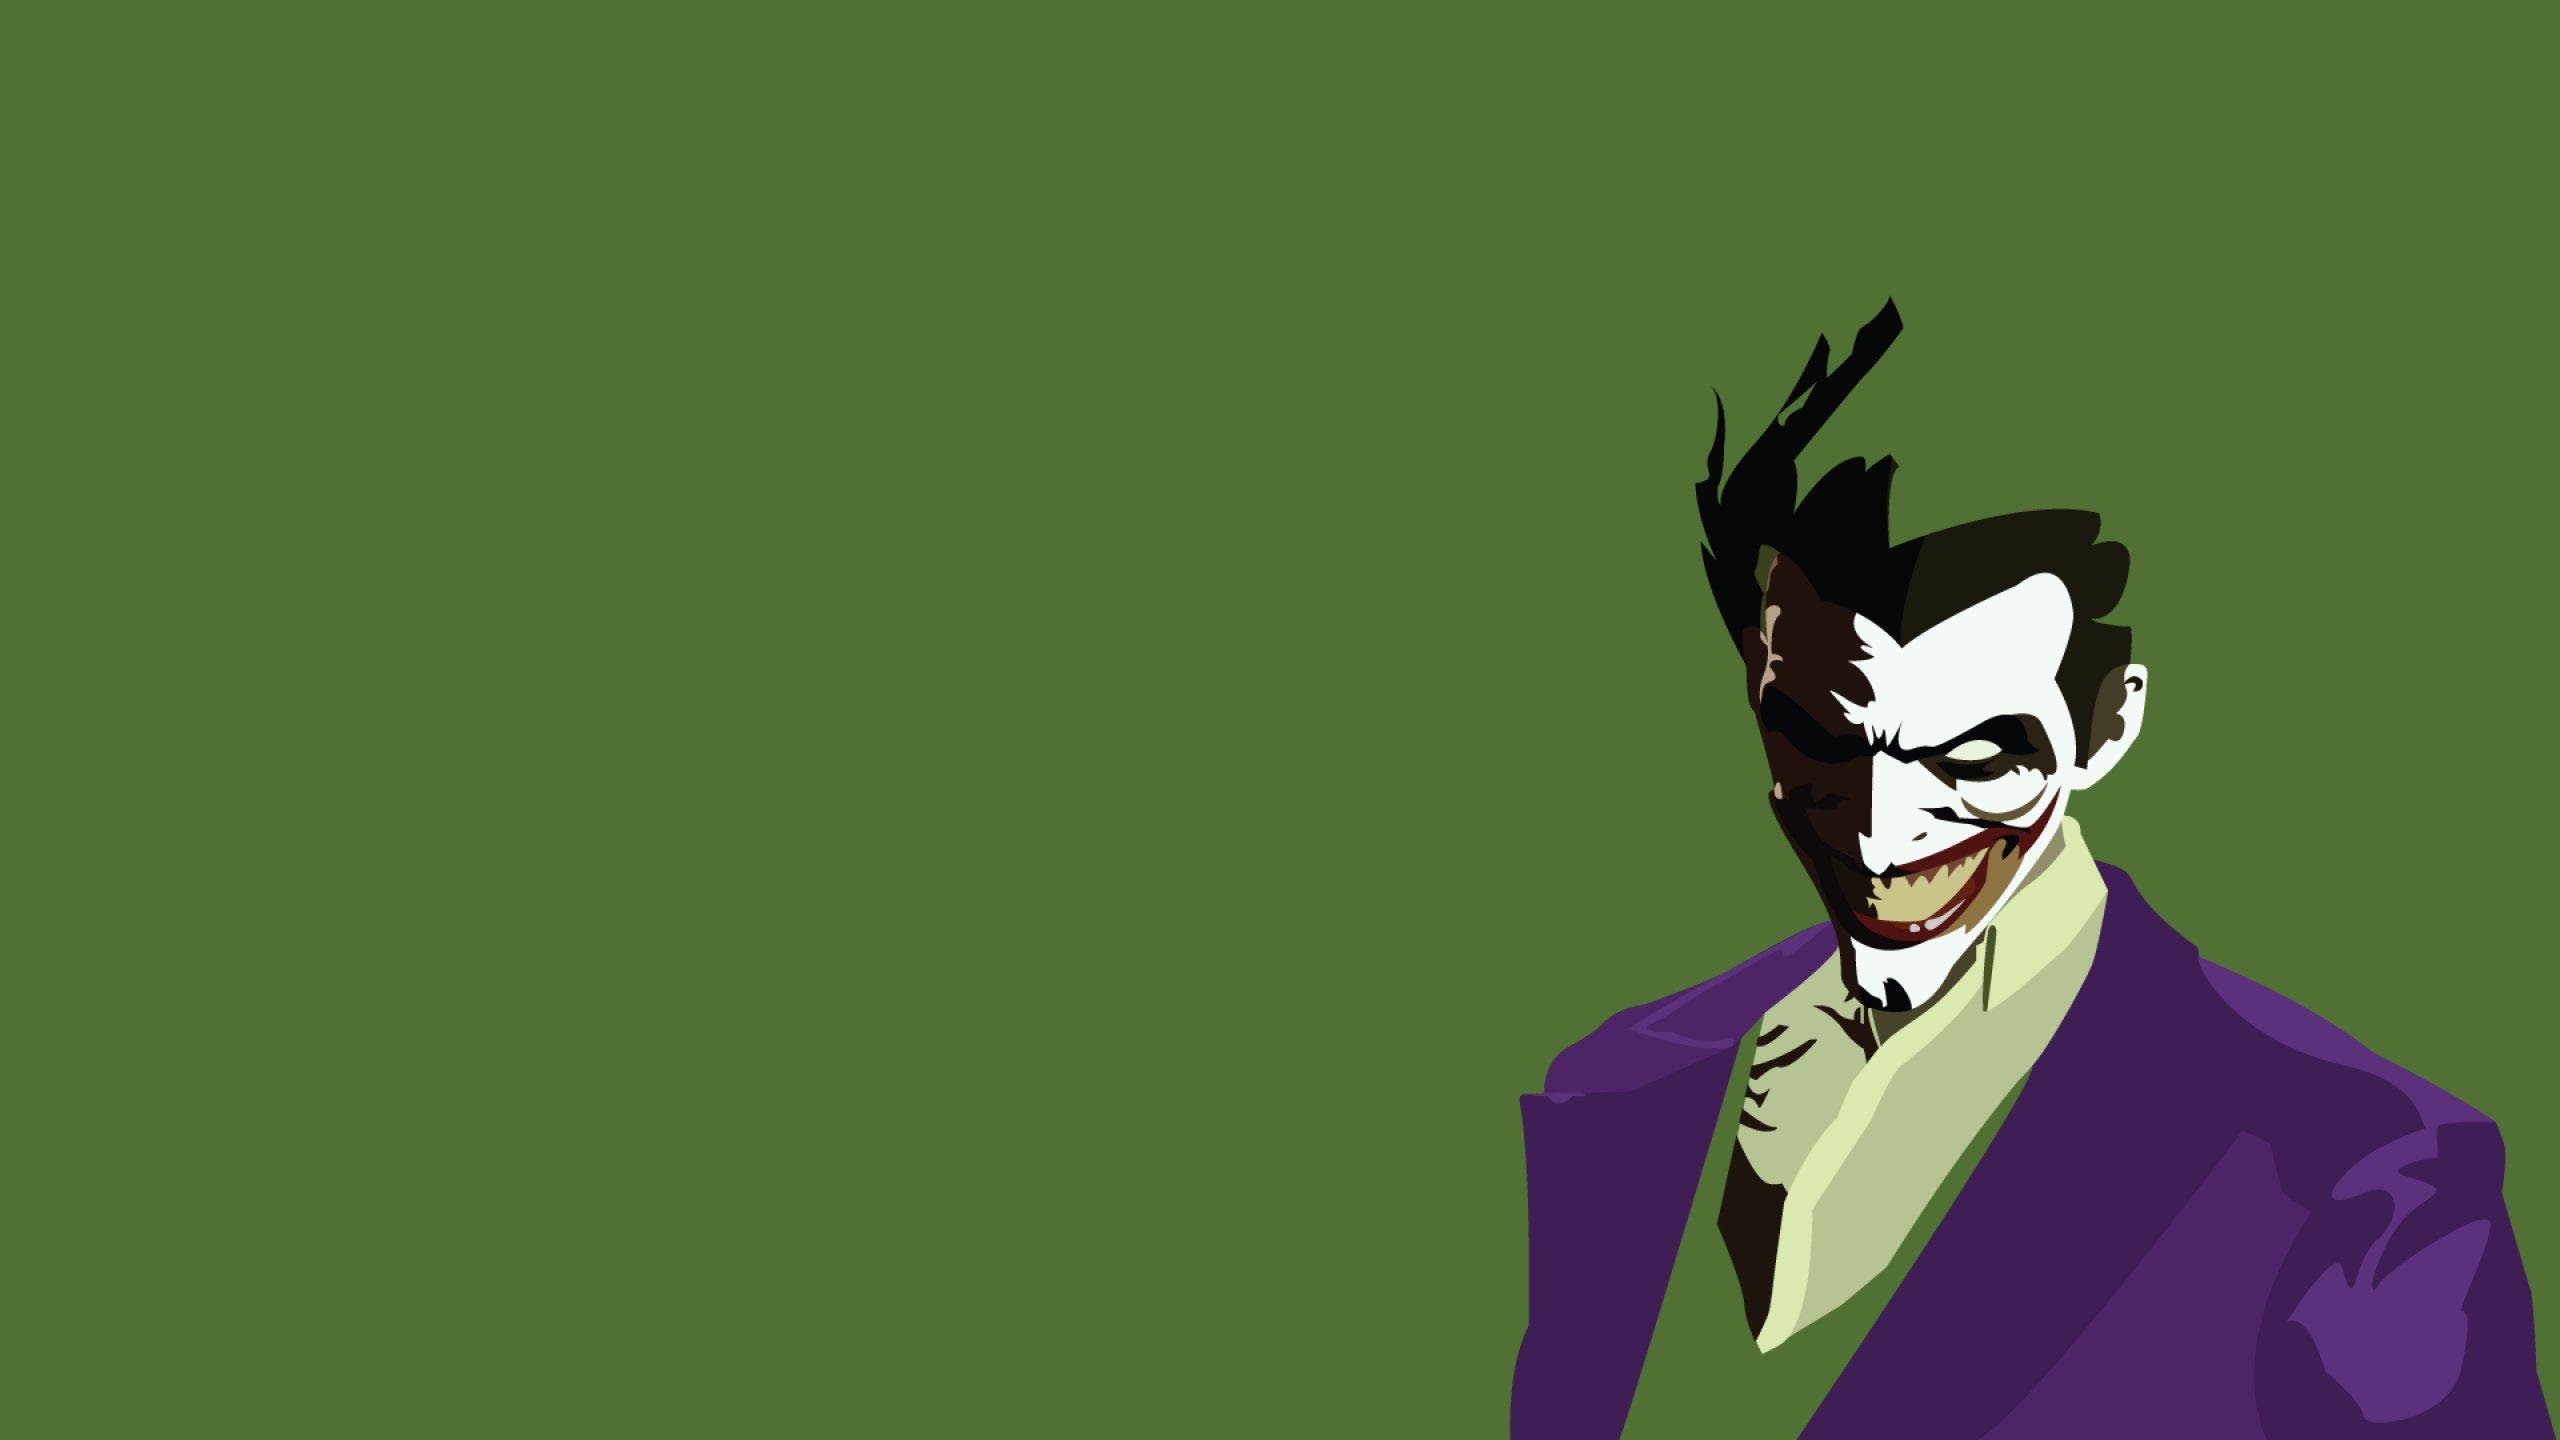 35 Gambar Wallpaper Joker Cartoon Hd terbaru 2020 - Miuiku